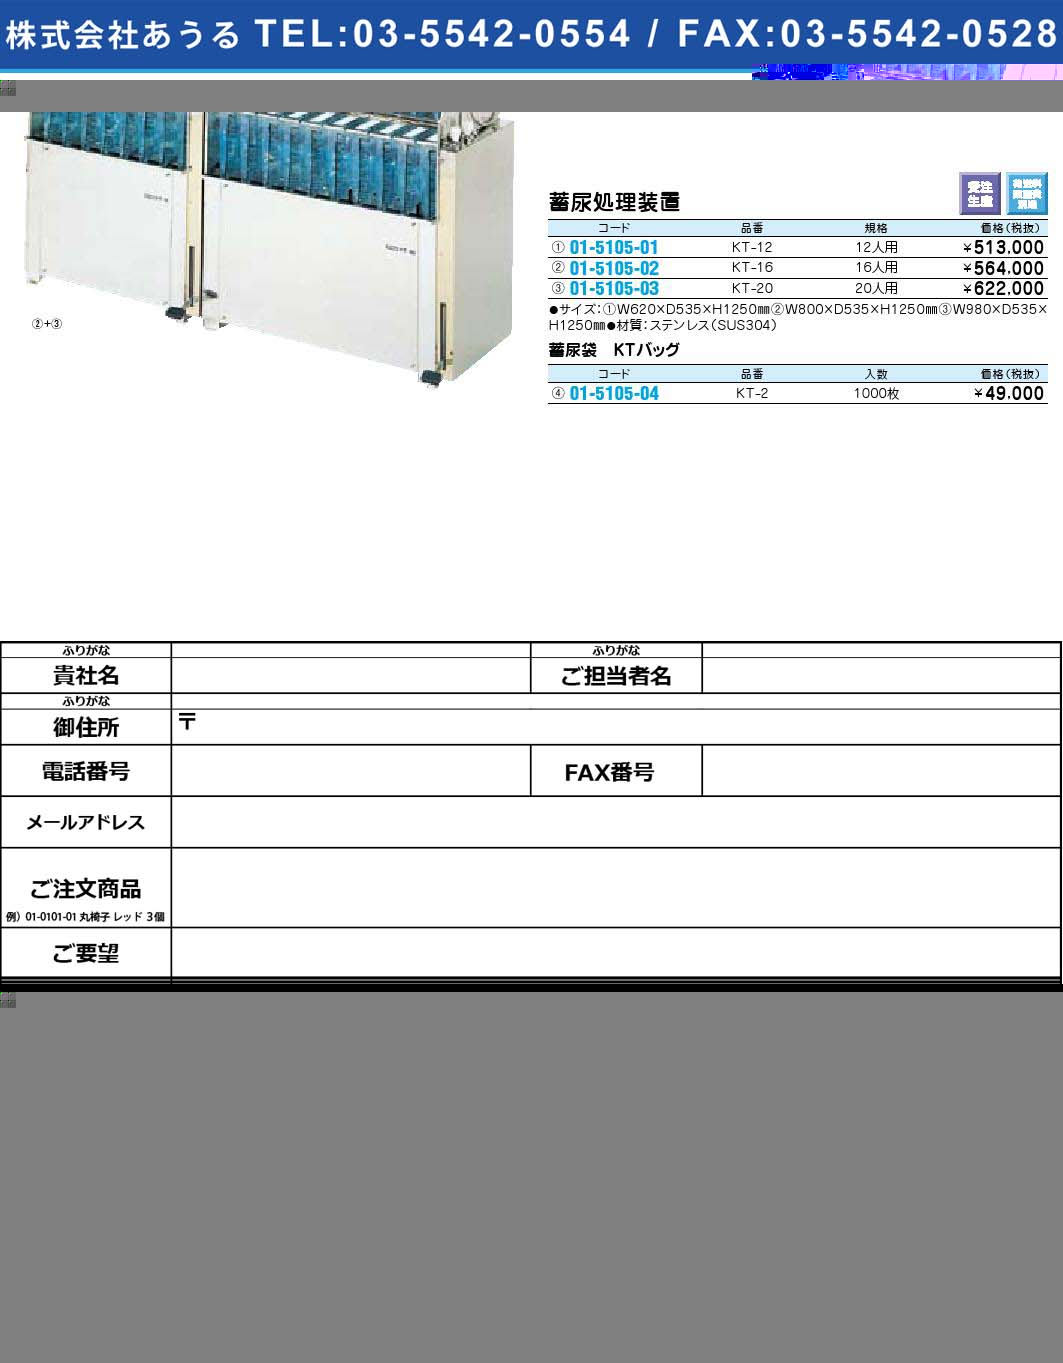 蓄尿処理装置 蓄尿袋 KTバッグKT-2(01-5105-04)